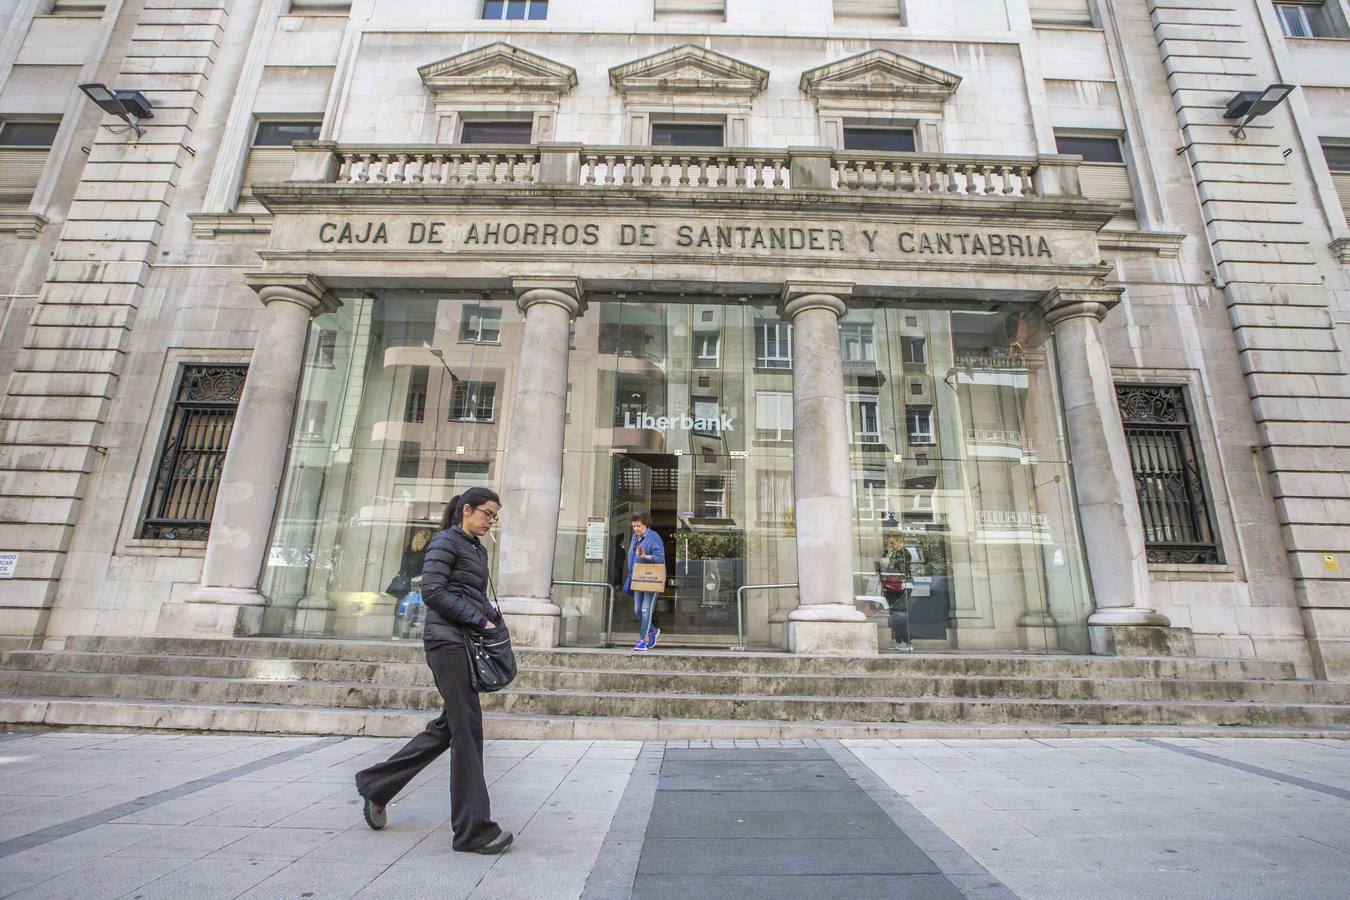 La falta de acuerdo en el reparto accionarial frustra la fusión entre Liberbank y Unicaja